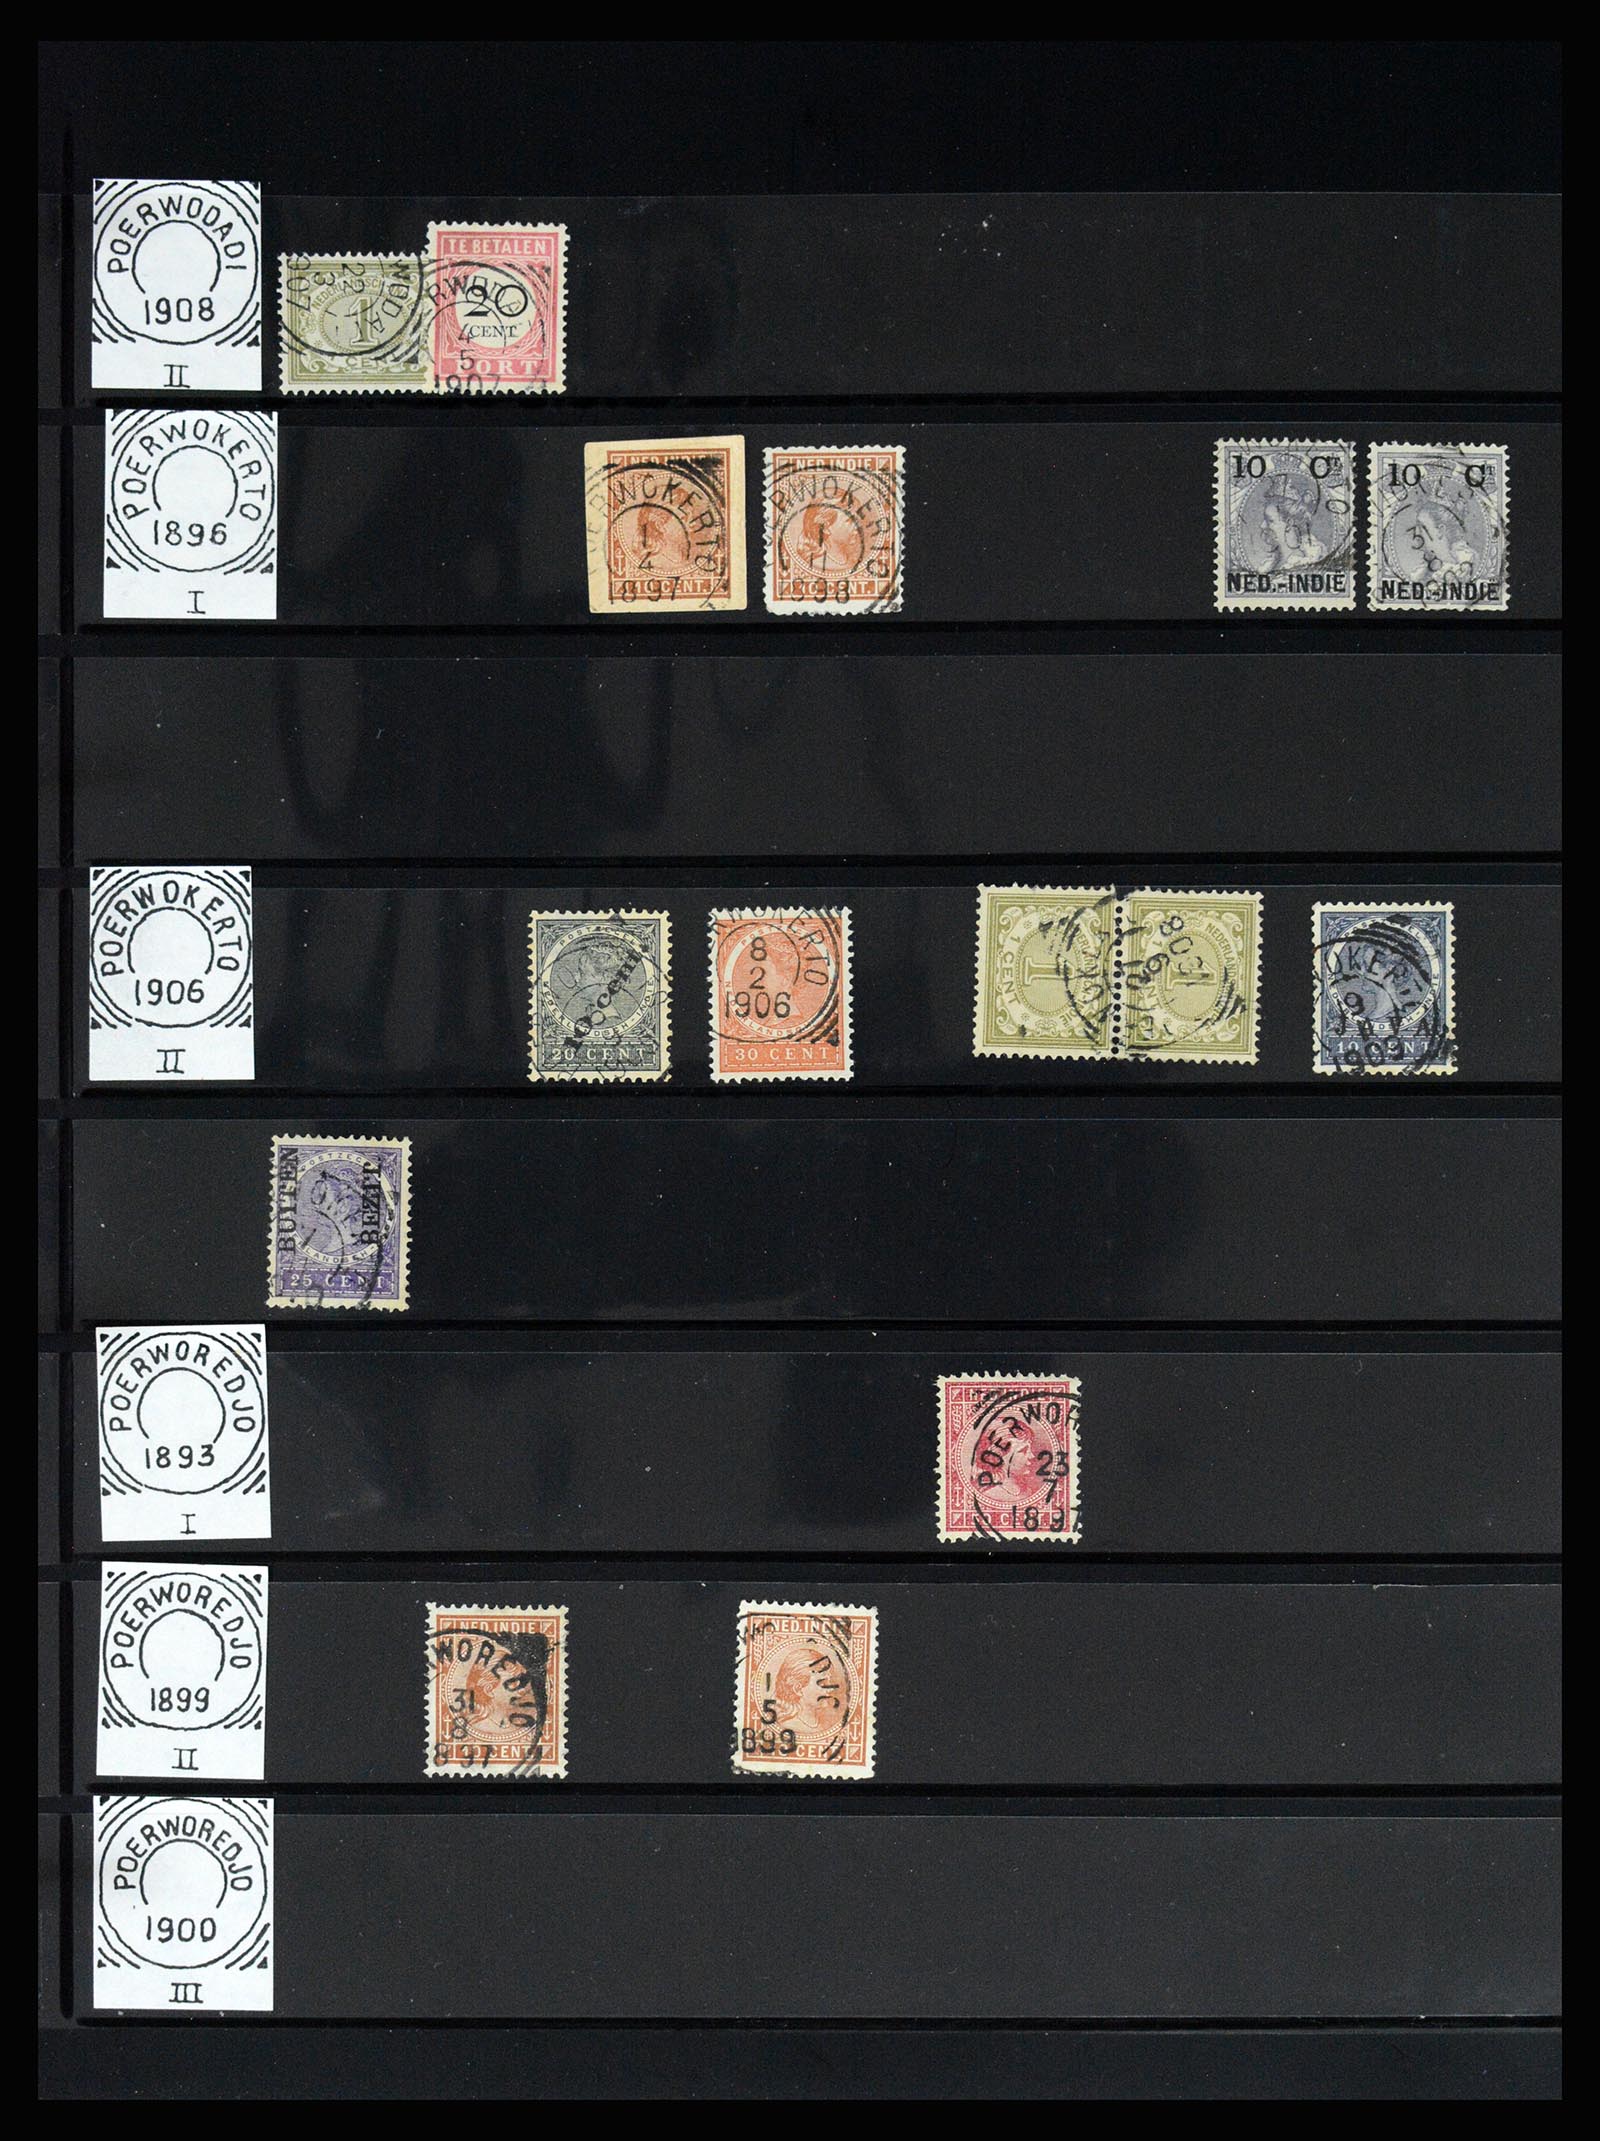 36512 138 - Stamp collection 36512 Nederlands Indië stempels 1872-1930.